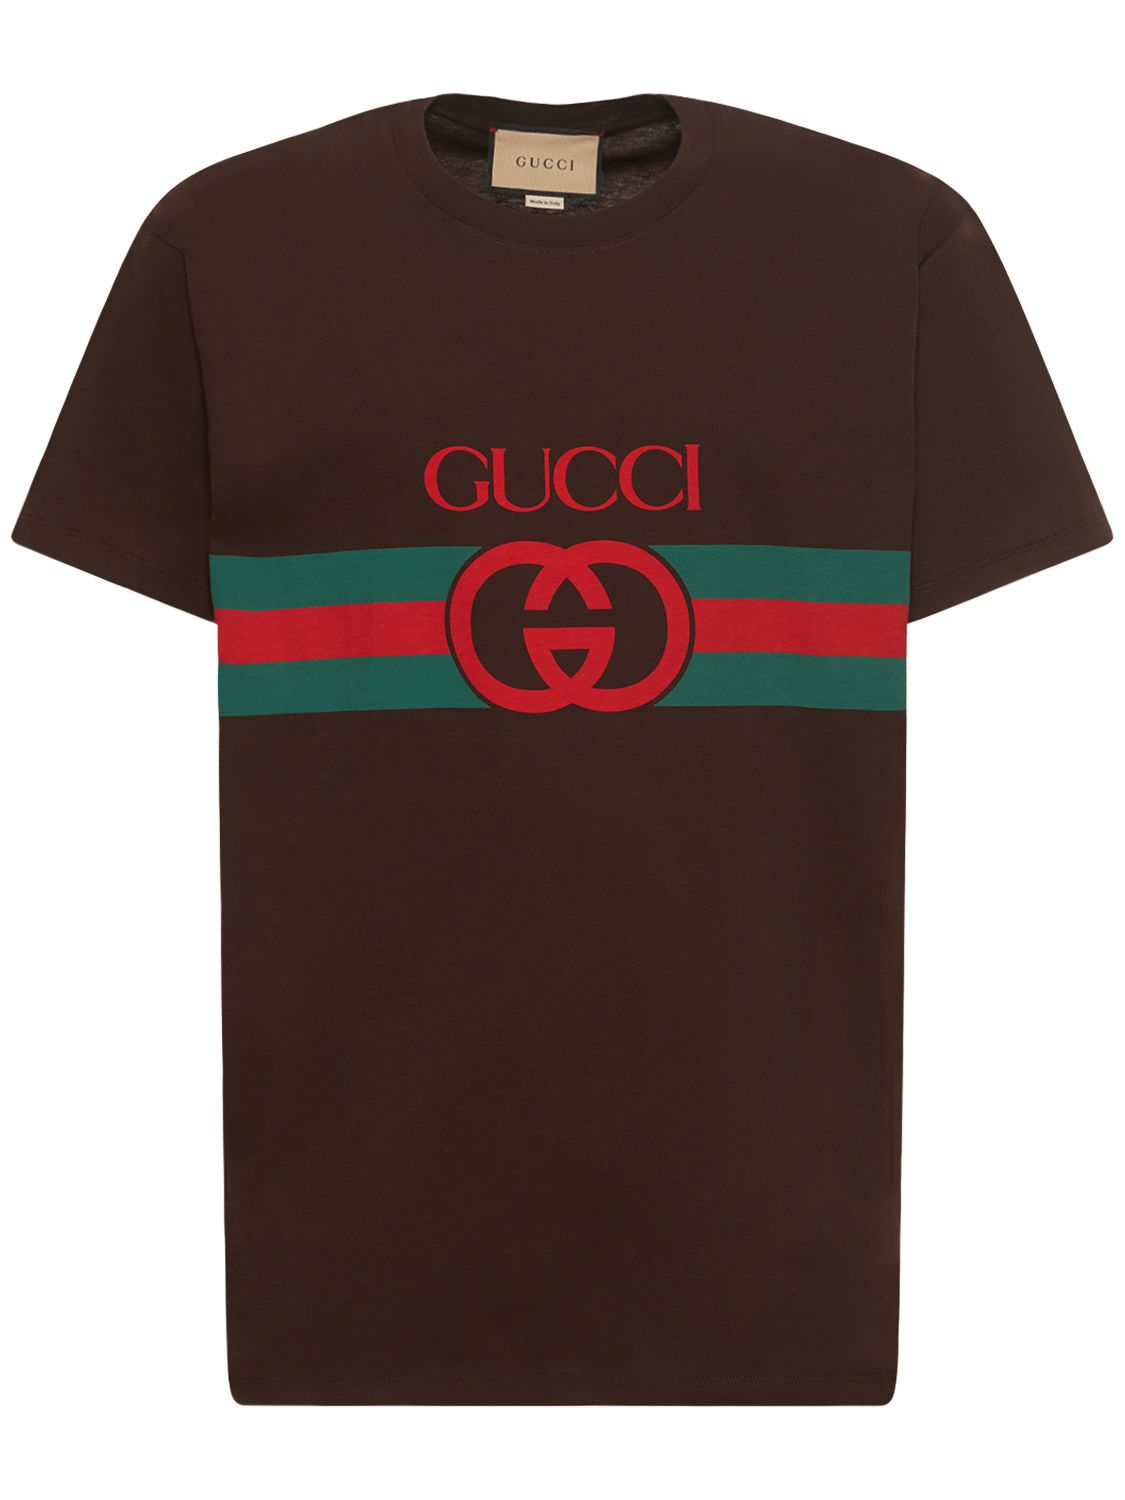 T-shirt En Coton Imprimé Gg - GUCCI - Modalova